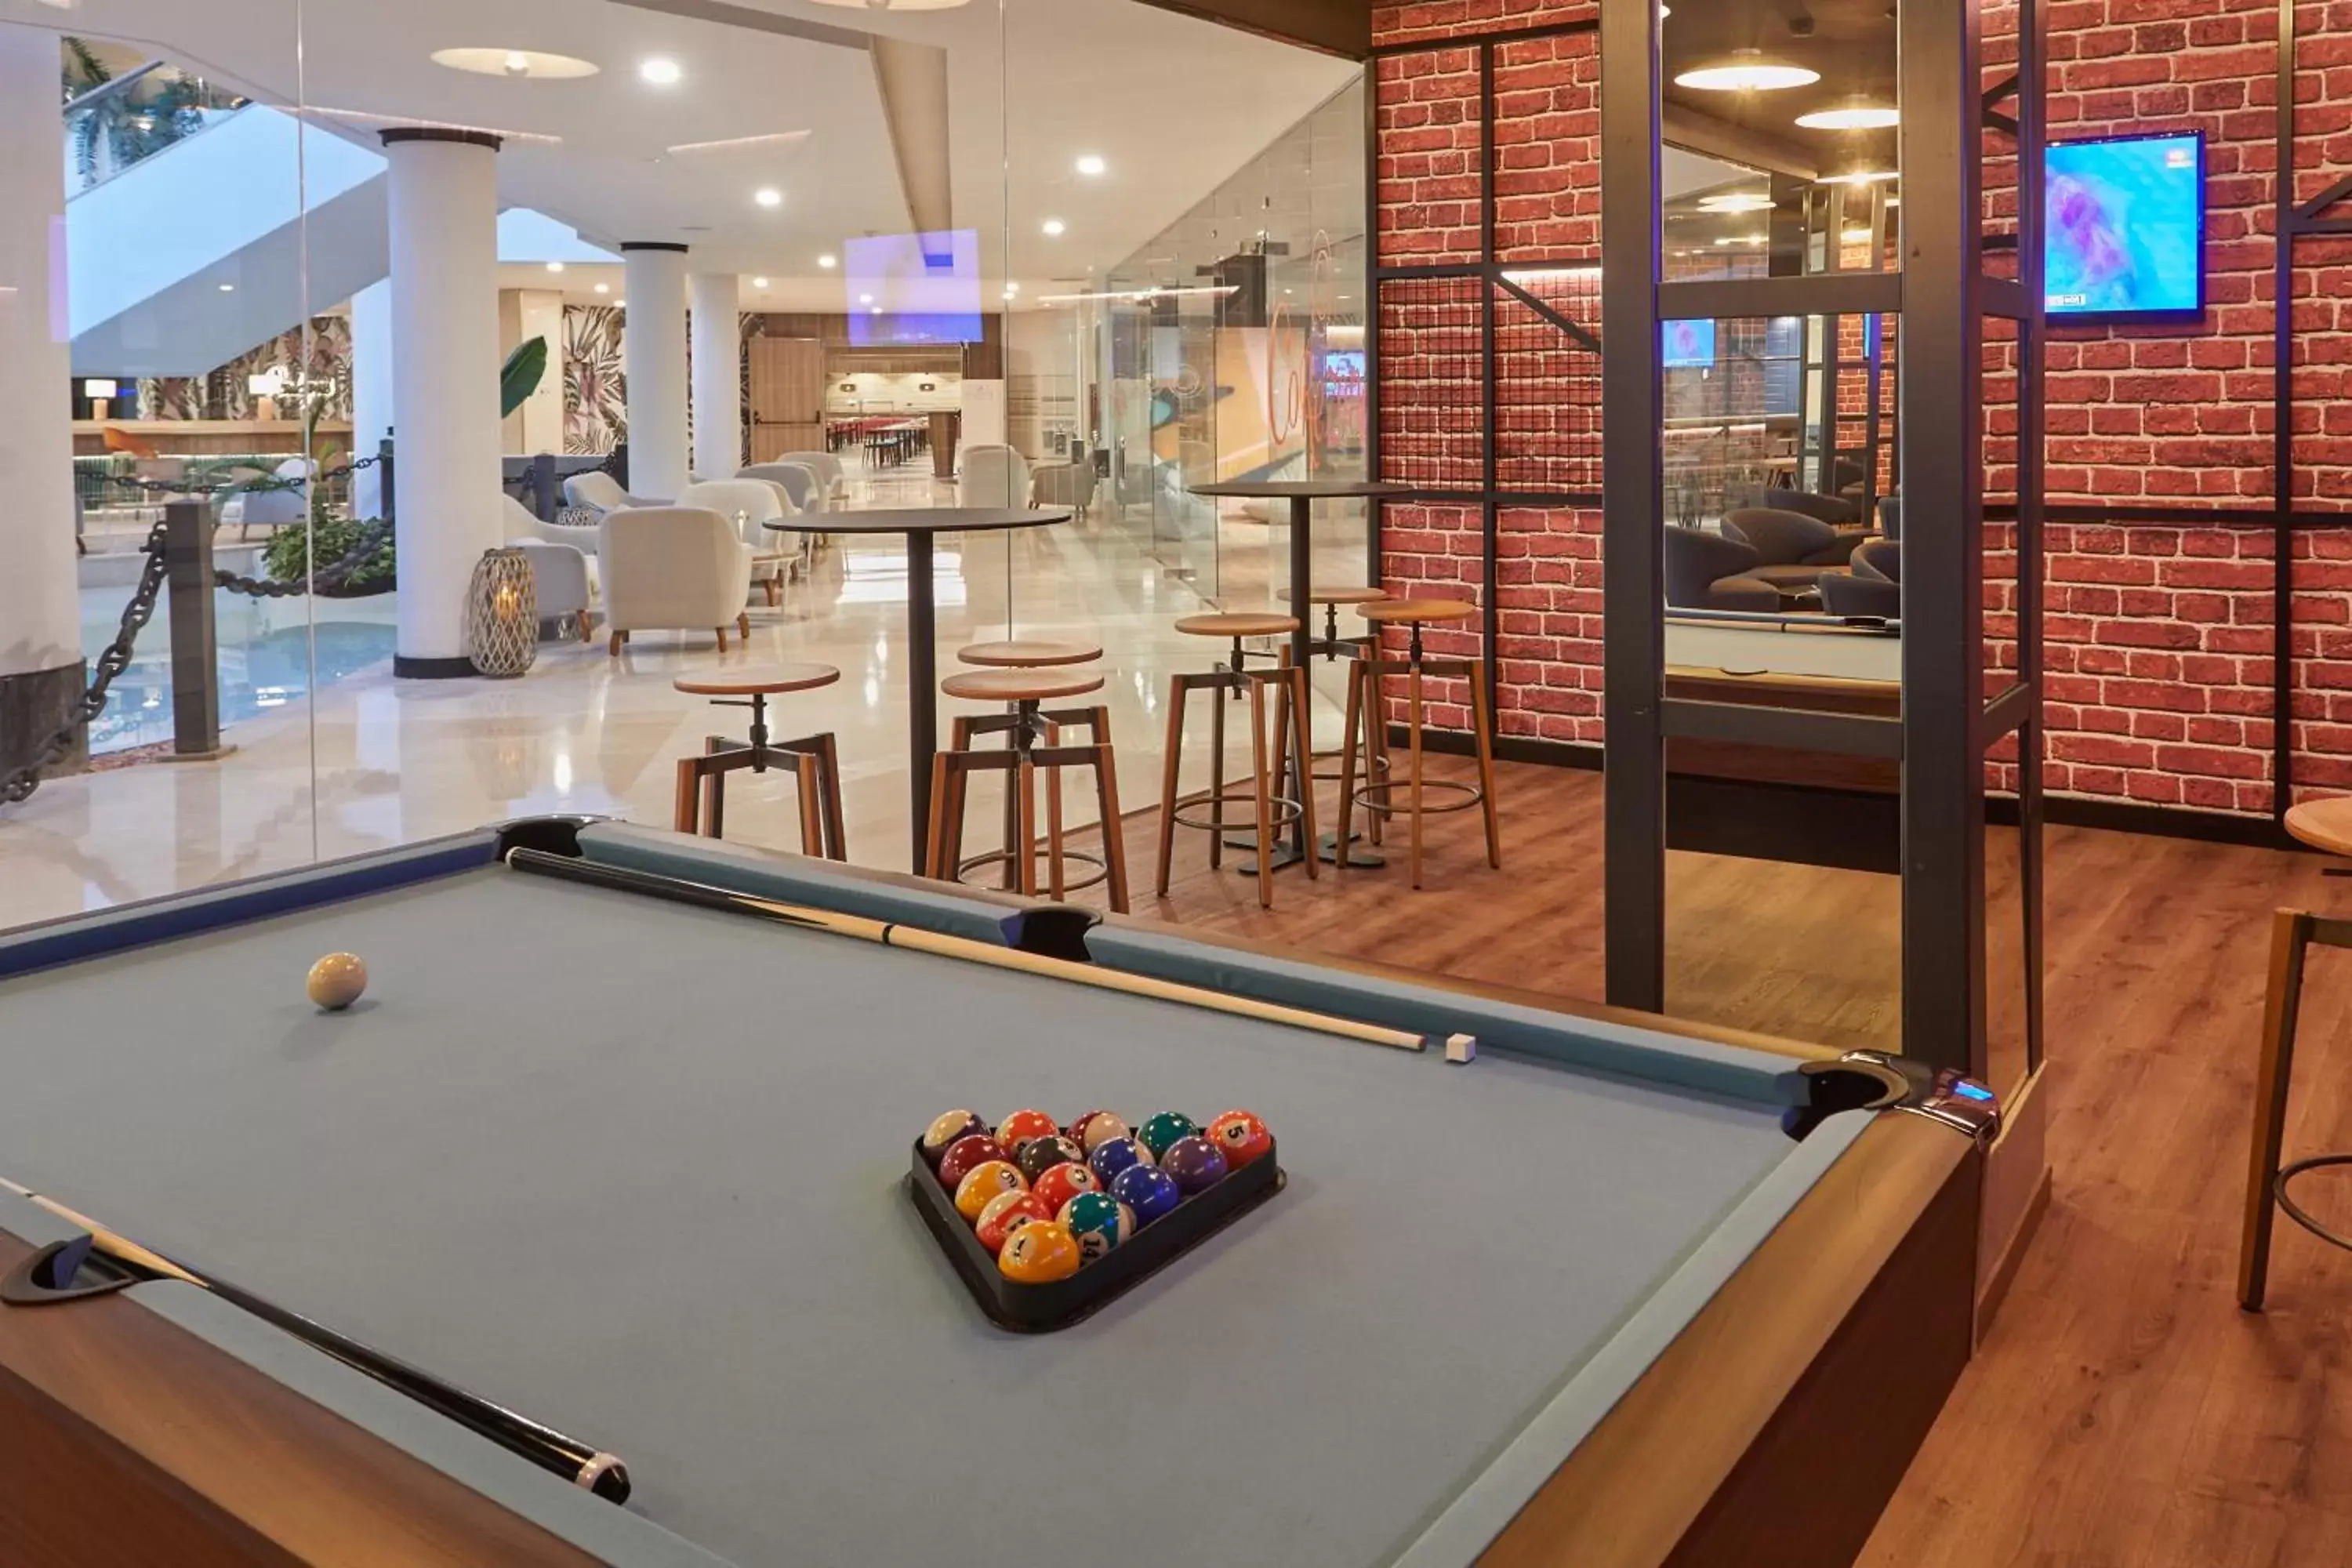 Game Room, Billiards in Dreams Lanzarote Playa Dorada Resort & Spa